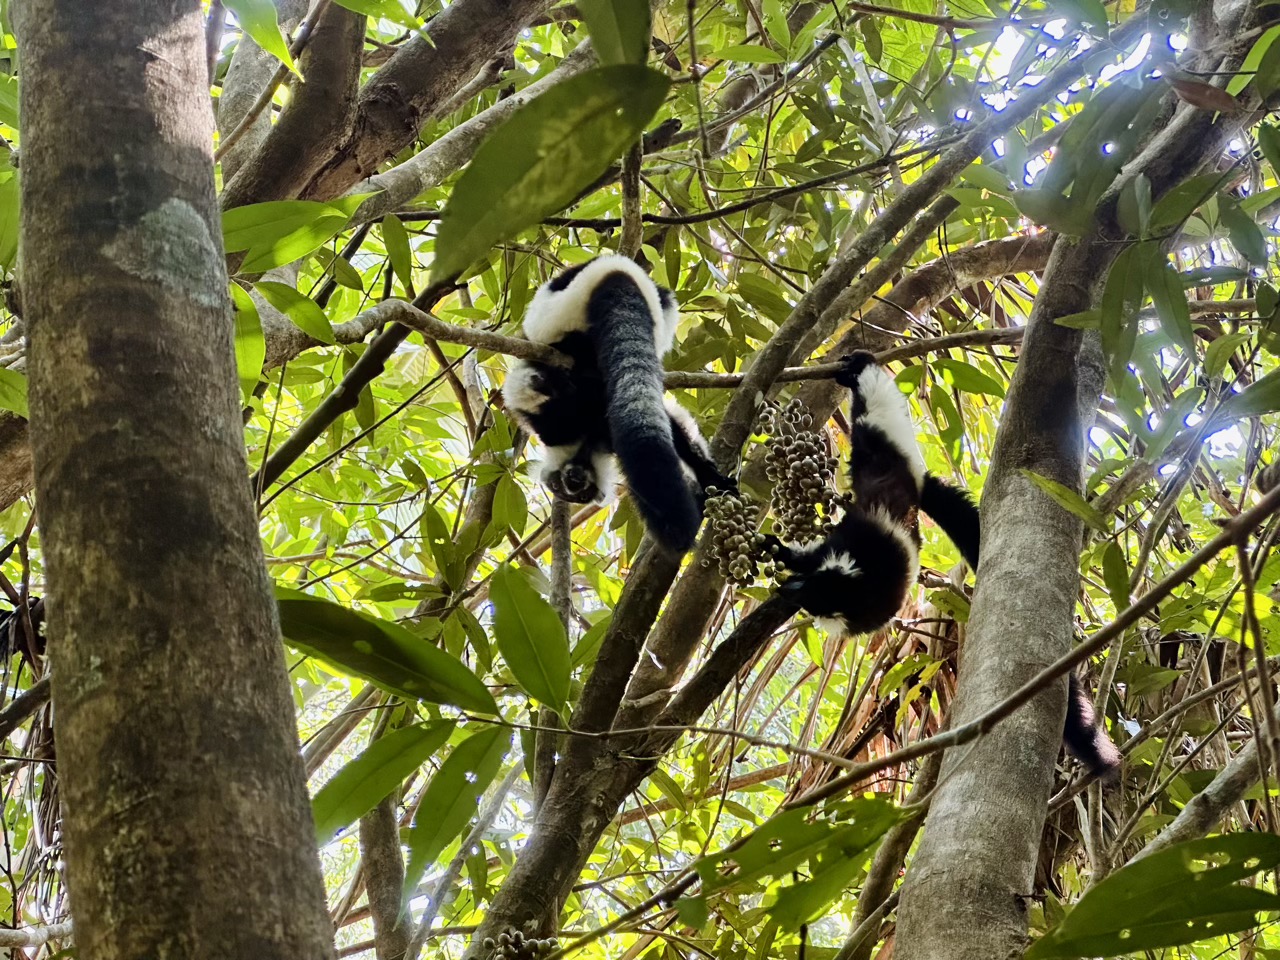 Two lemurs eating fruit